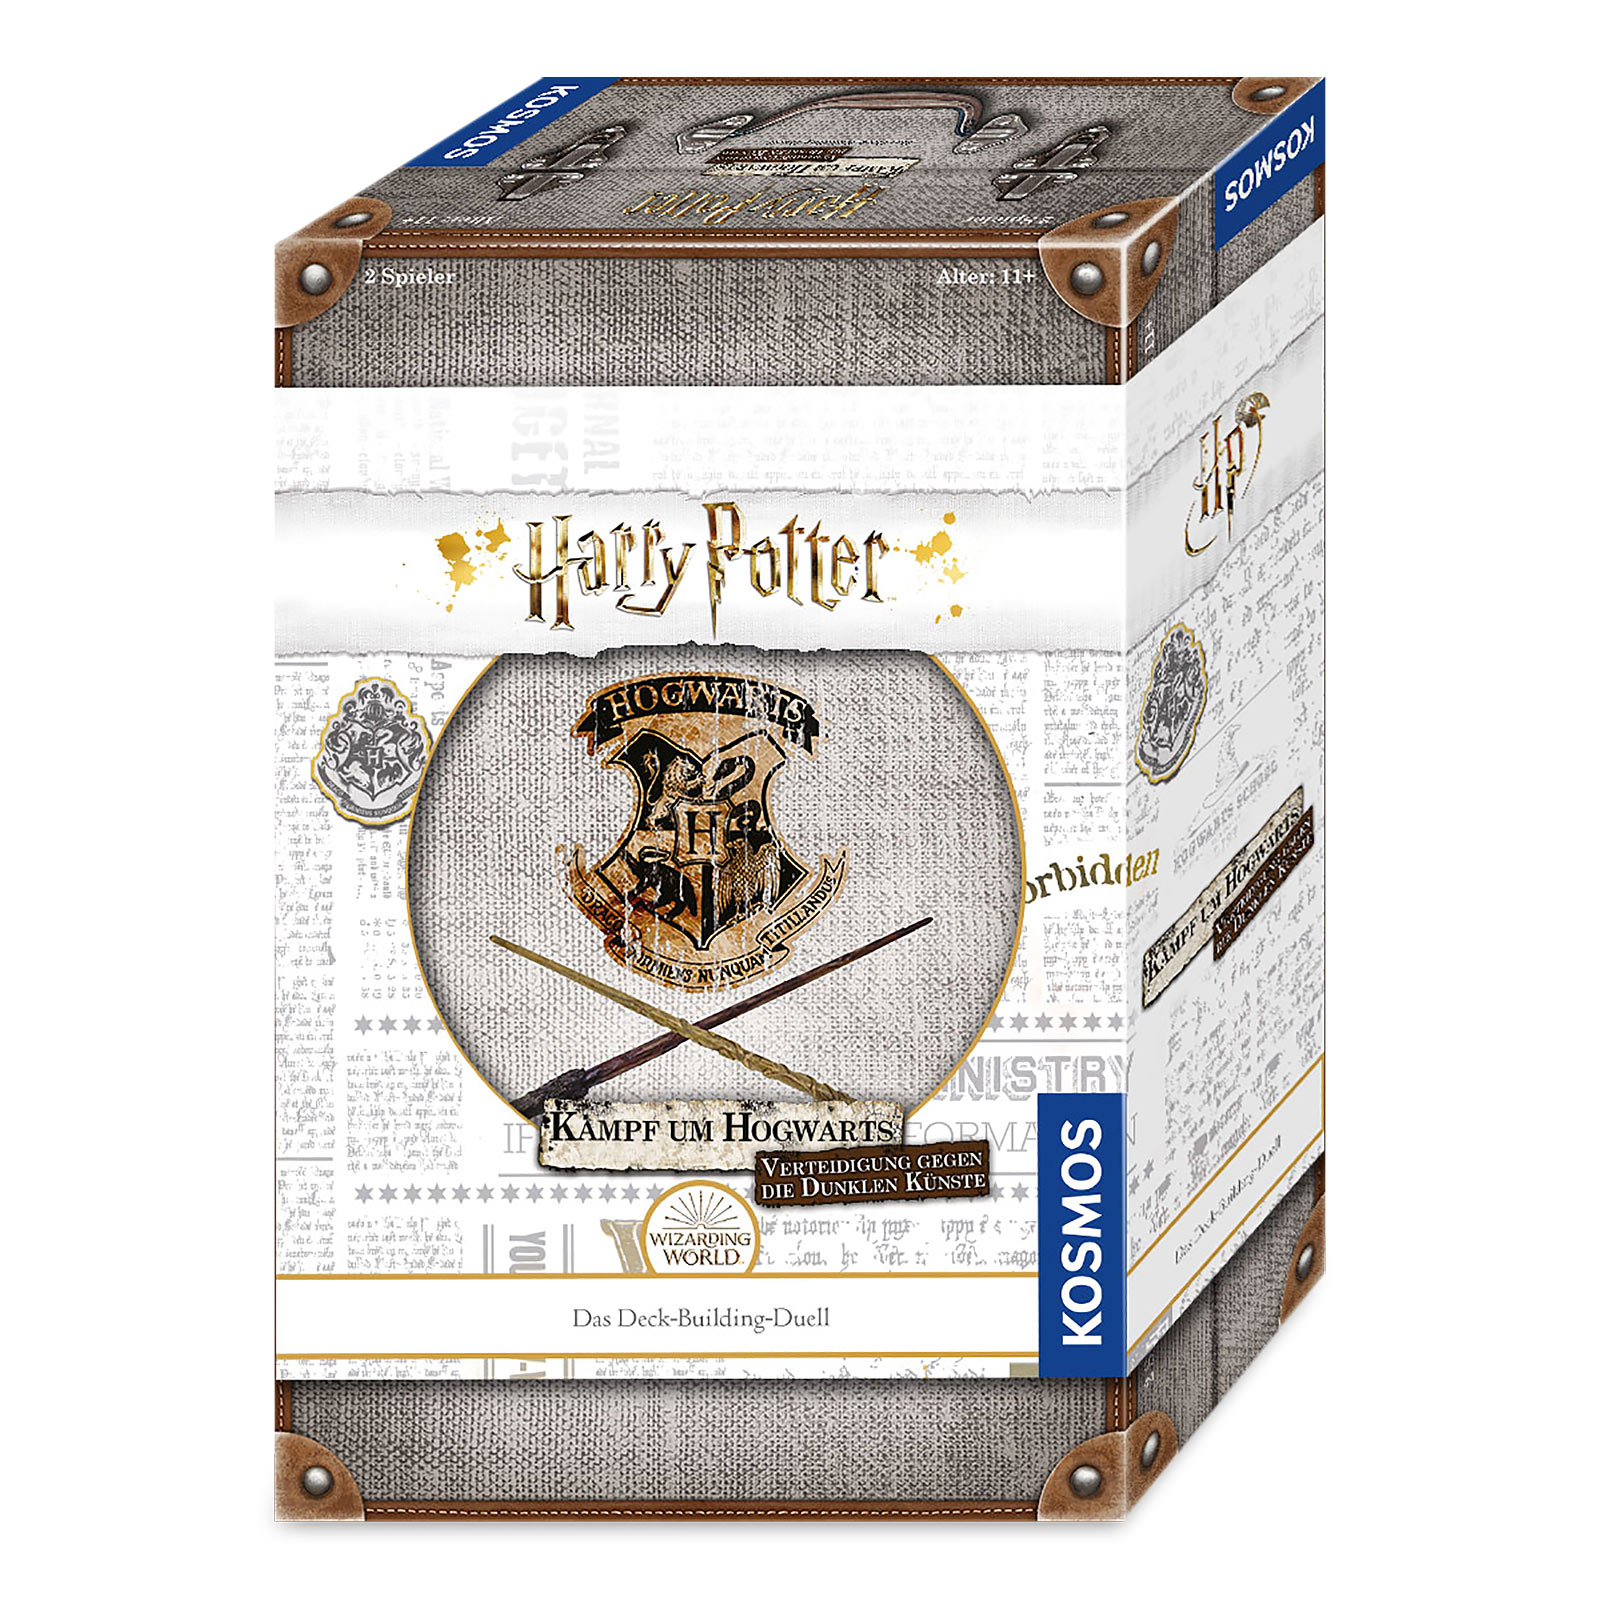 Harry Potter - Kampf um Hogwarts - Verteidigung gegen die dunklen Künste Kartenspiel